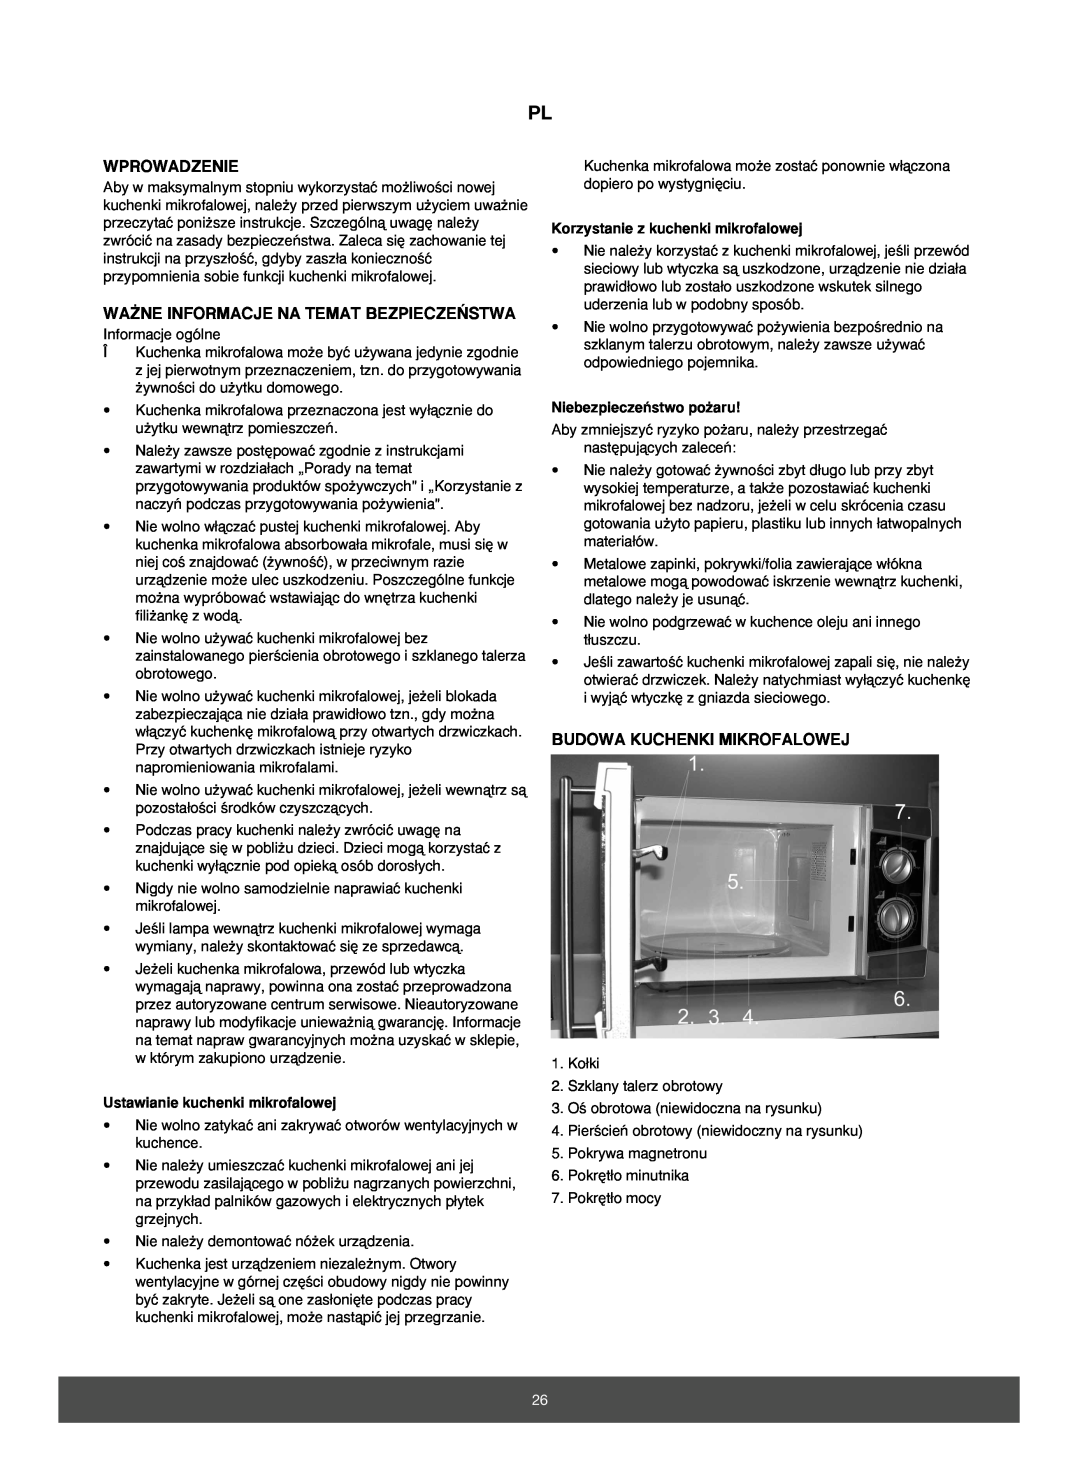 Melissa 653-070, 653-071 manual Wprowadzenie, Wa˚Ne Informacje Na Temat Bezpiecze¡Stwa, Budowa Kuchenki Mikrofalowej 